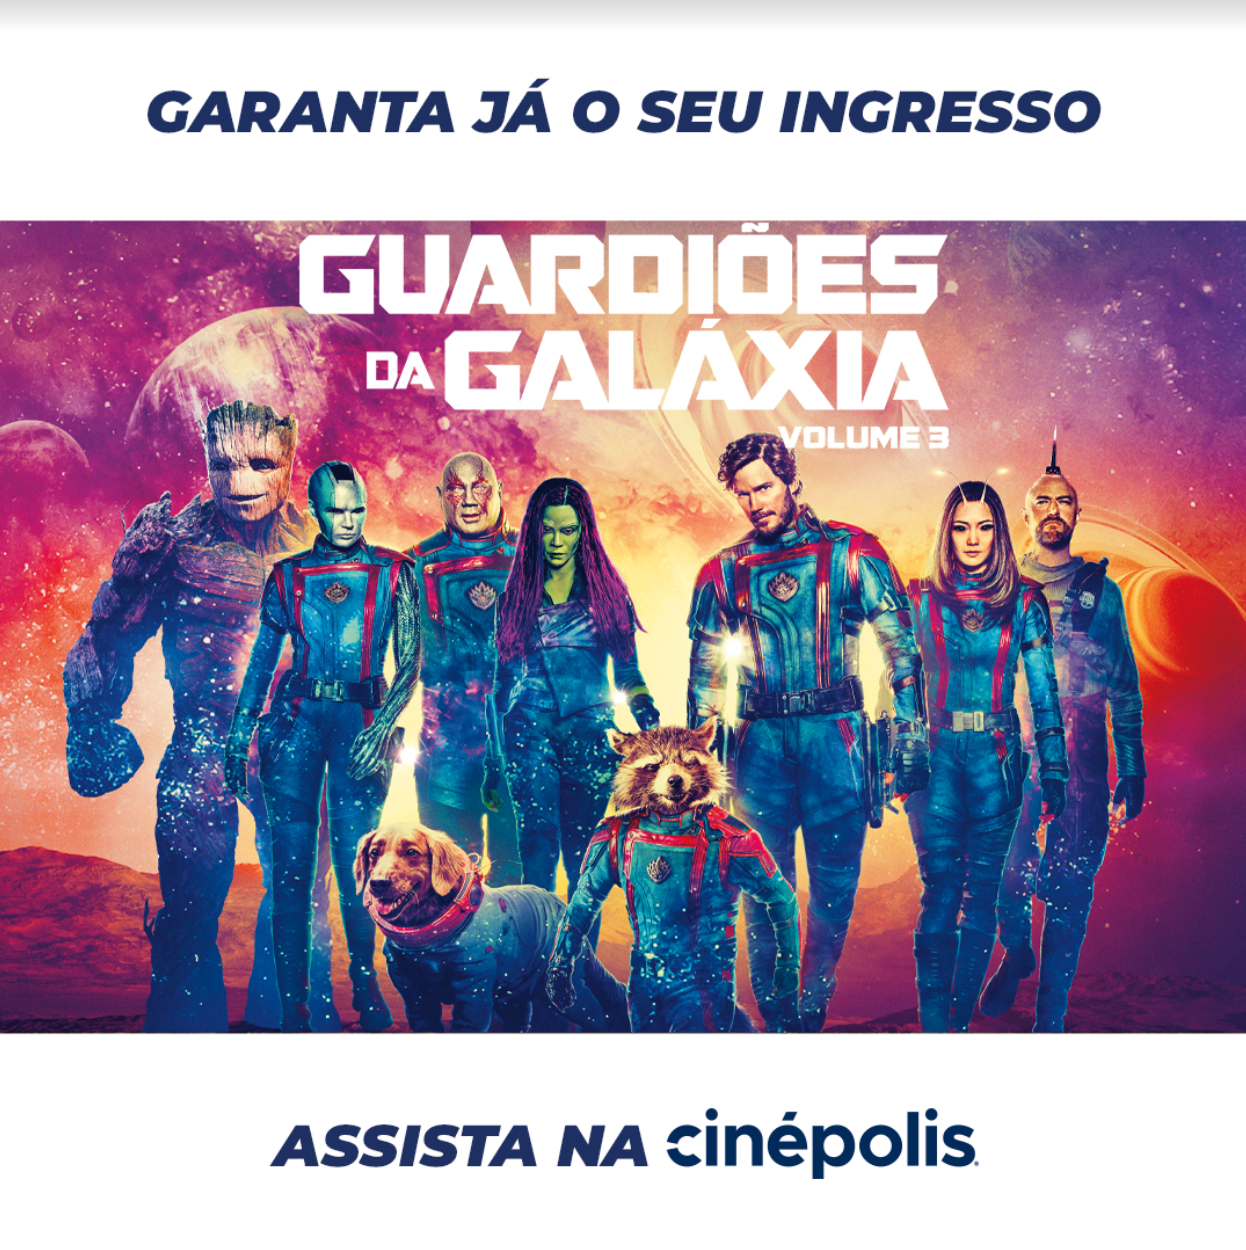 Guardiões da Galáxia' estreia hoje com 3º filme da franquia